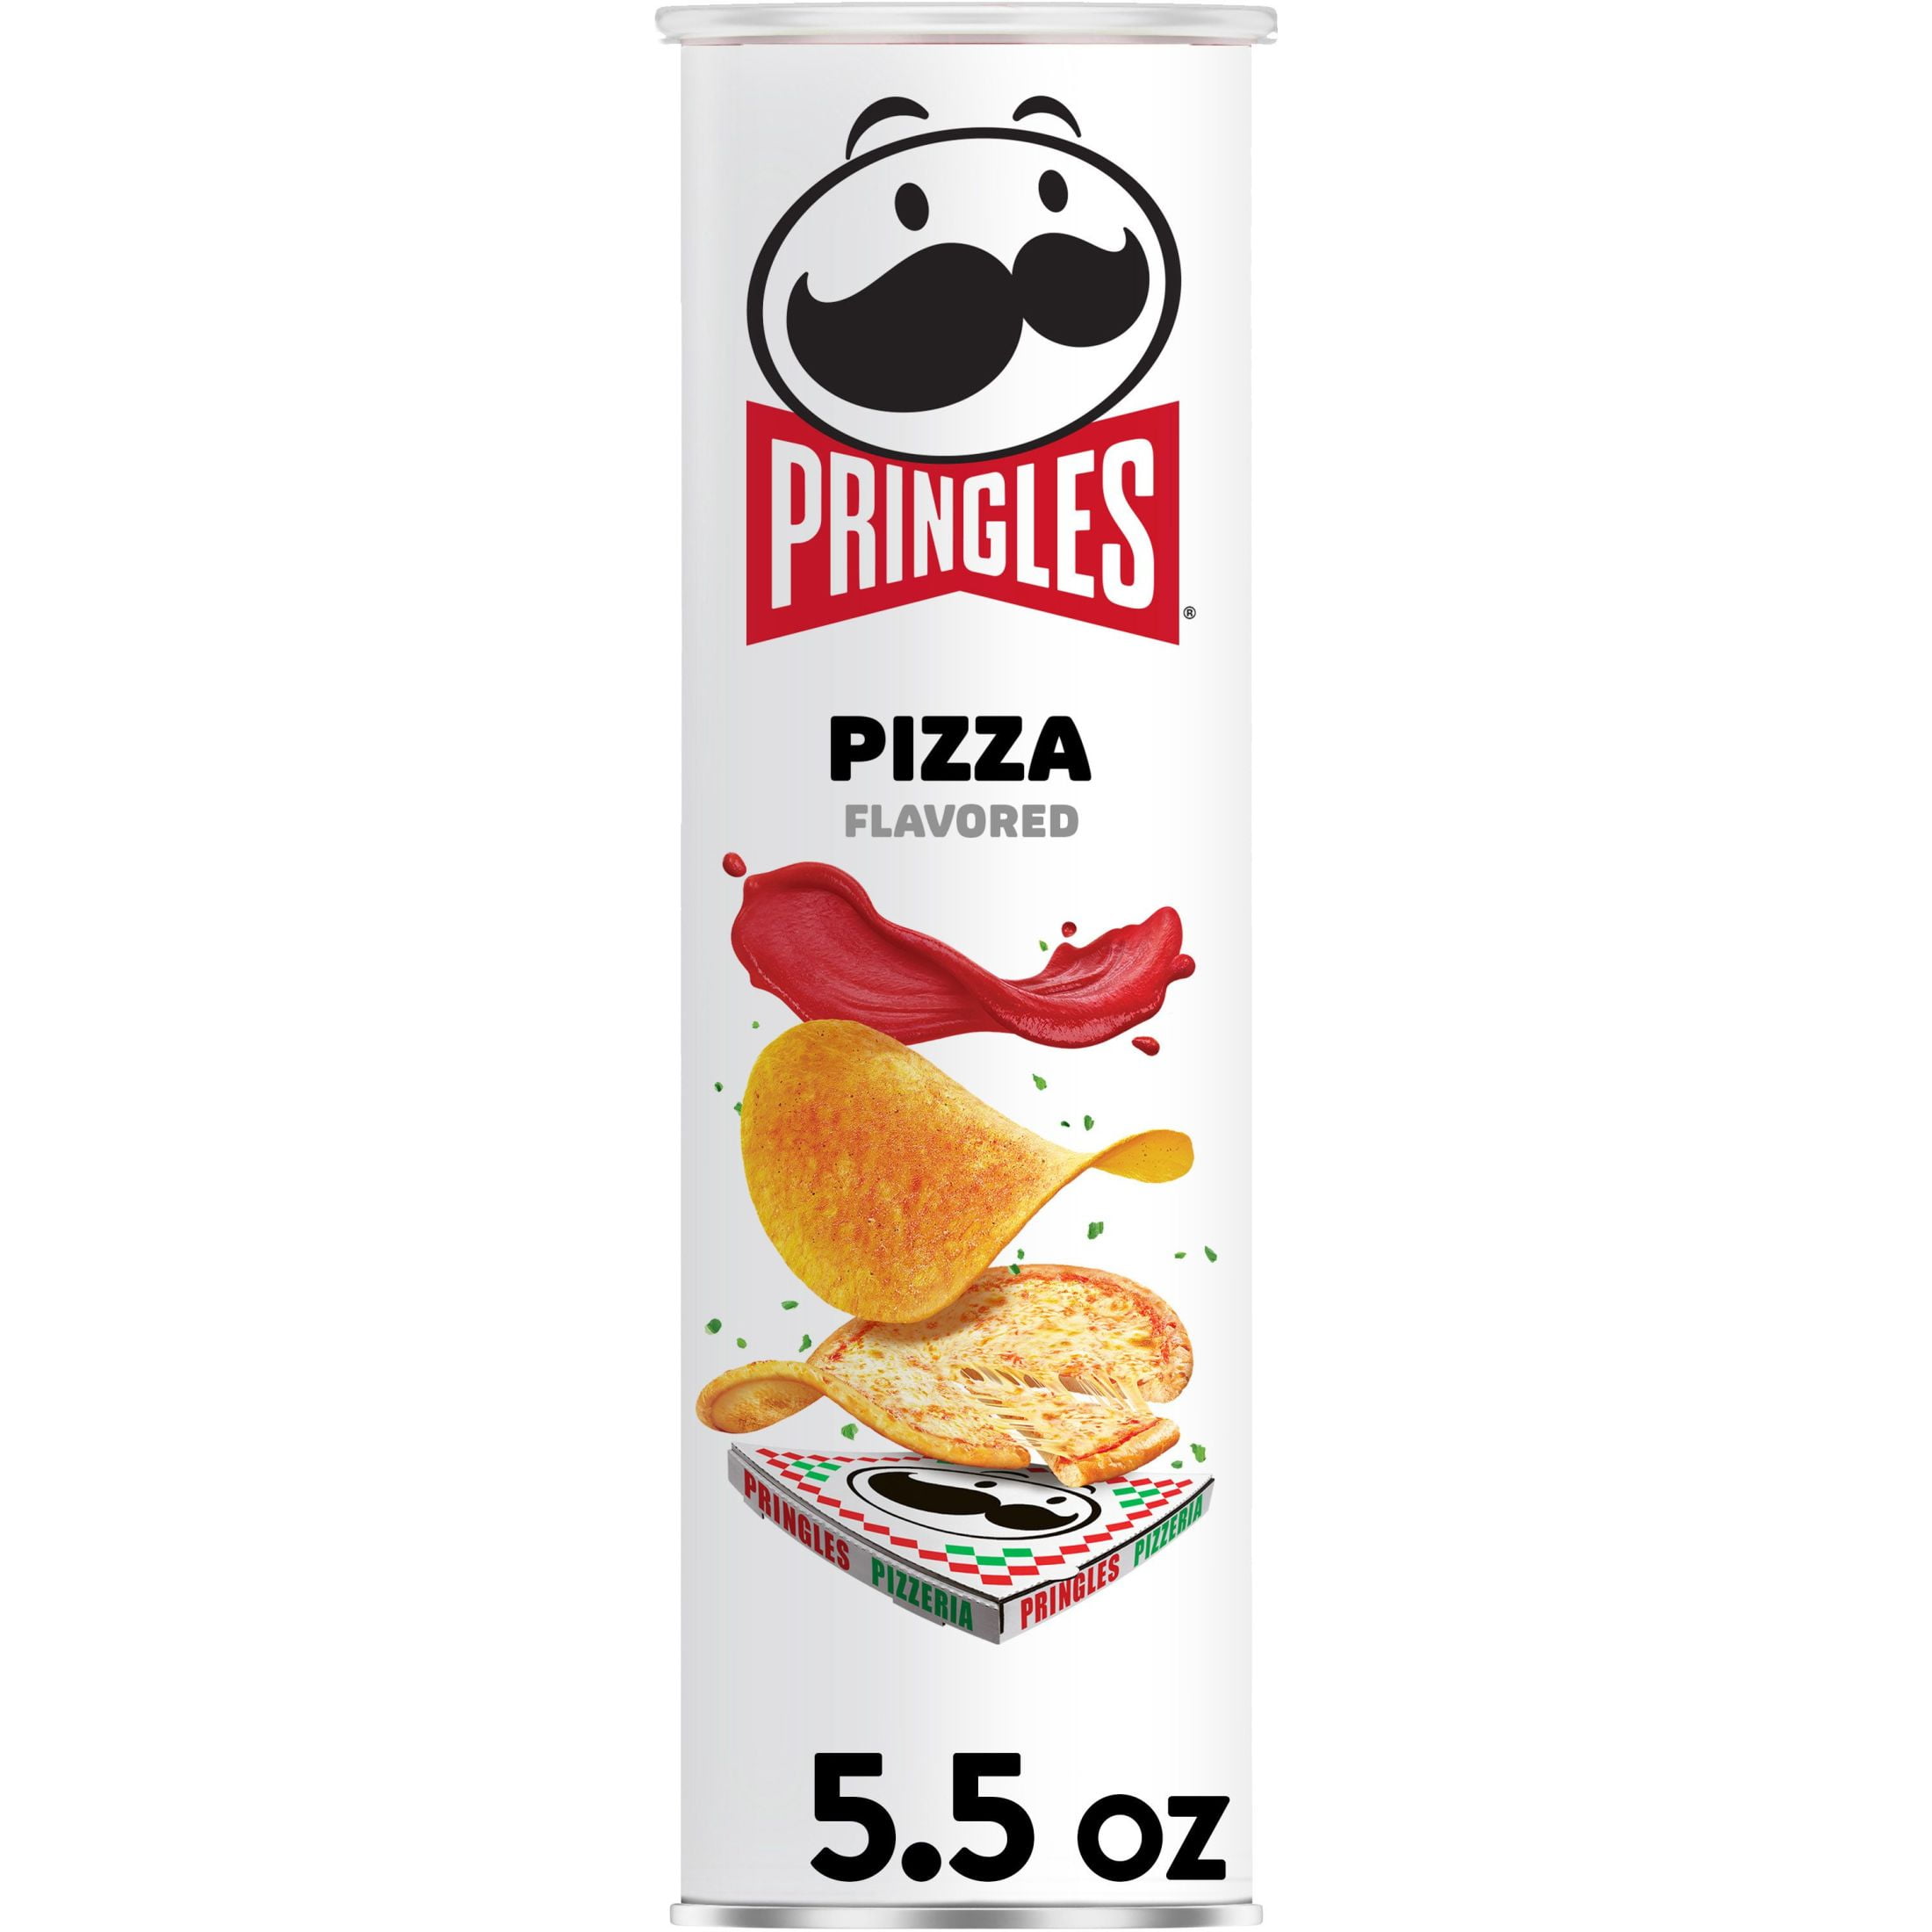 Pringles Pizza Potato Crisps Chips, 5.5 oz